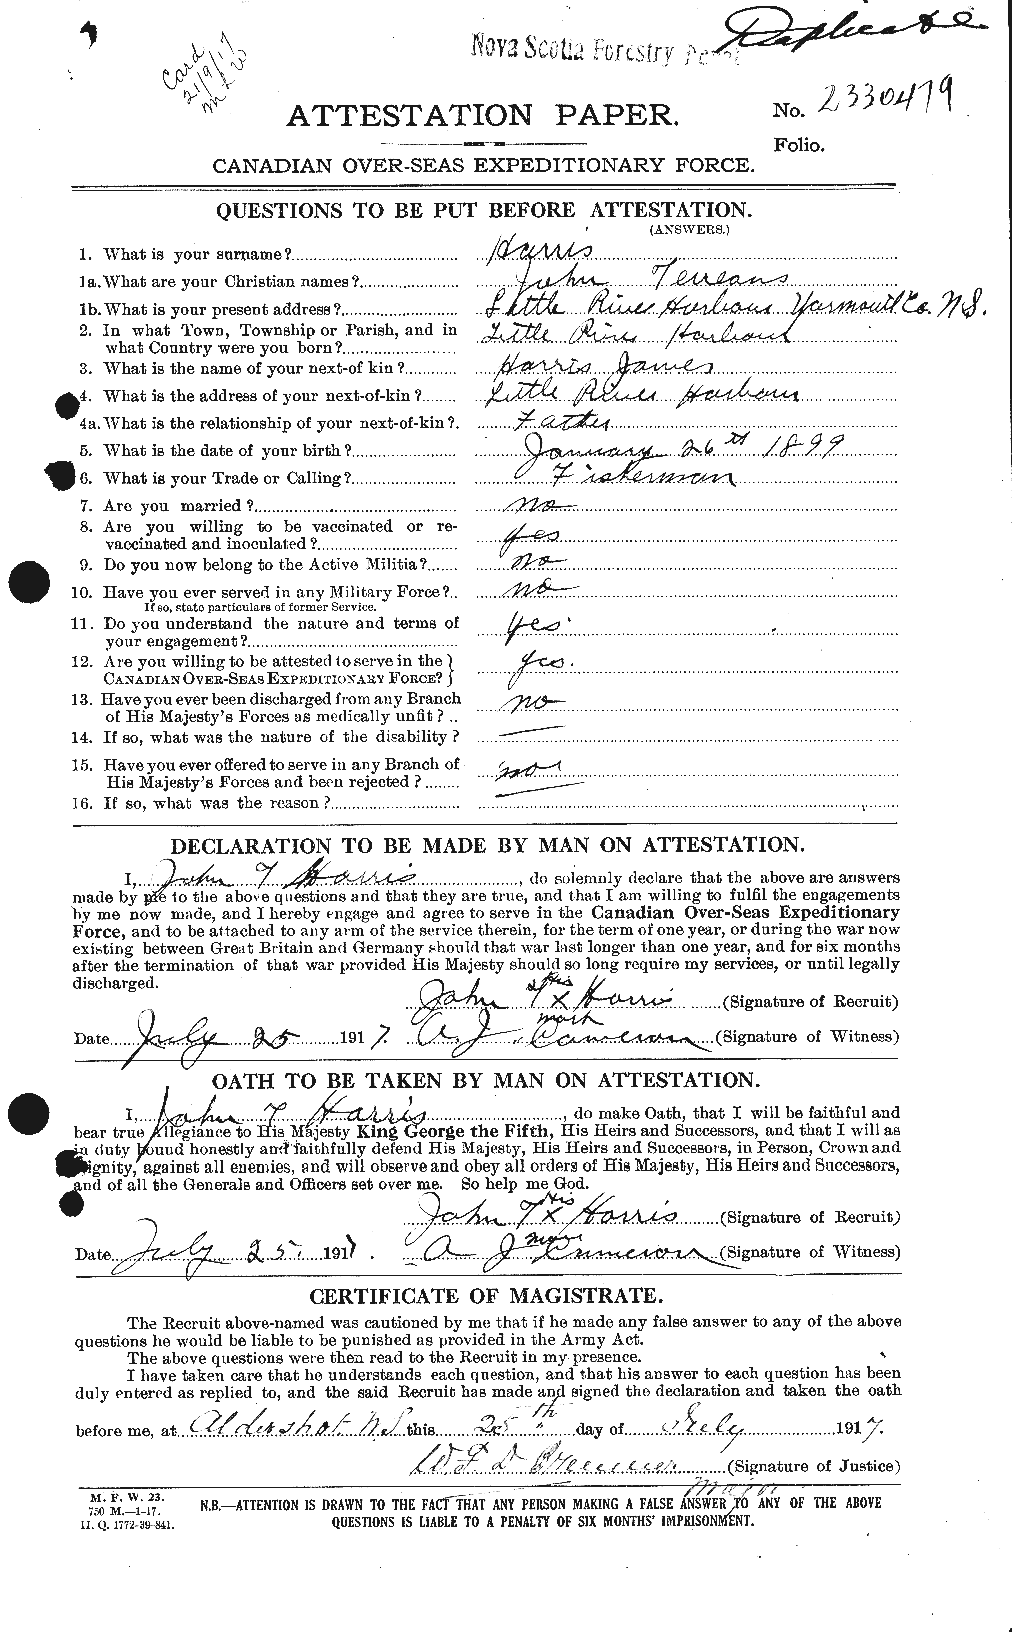 Dossiers du Personnel de la Première Guerre mondiale - CEC 377282a